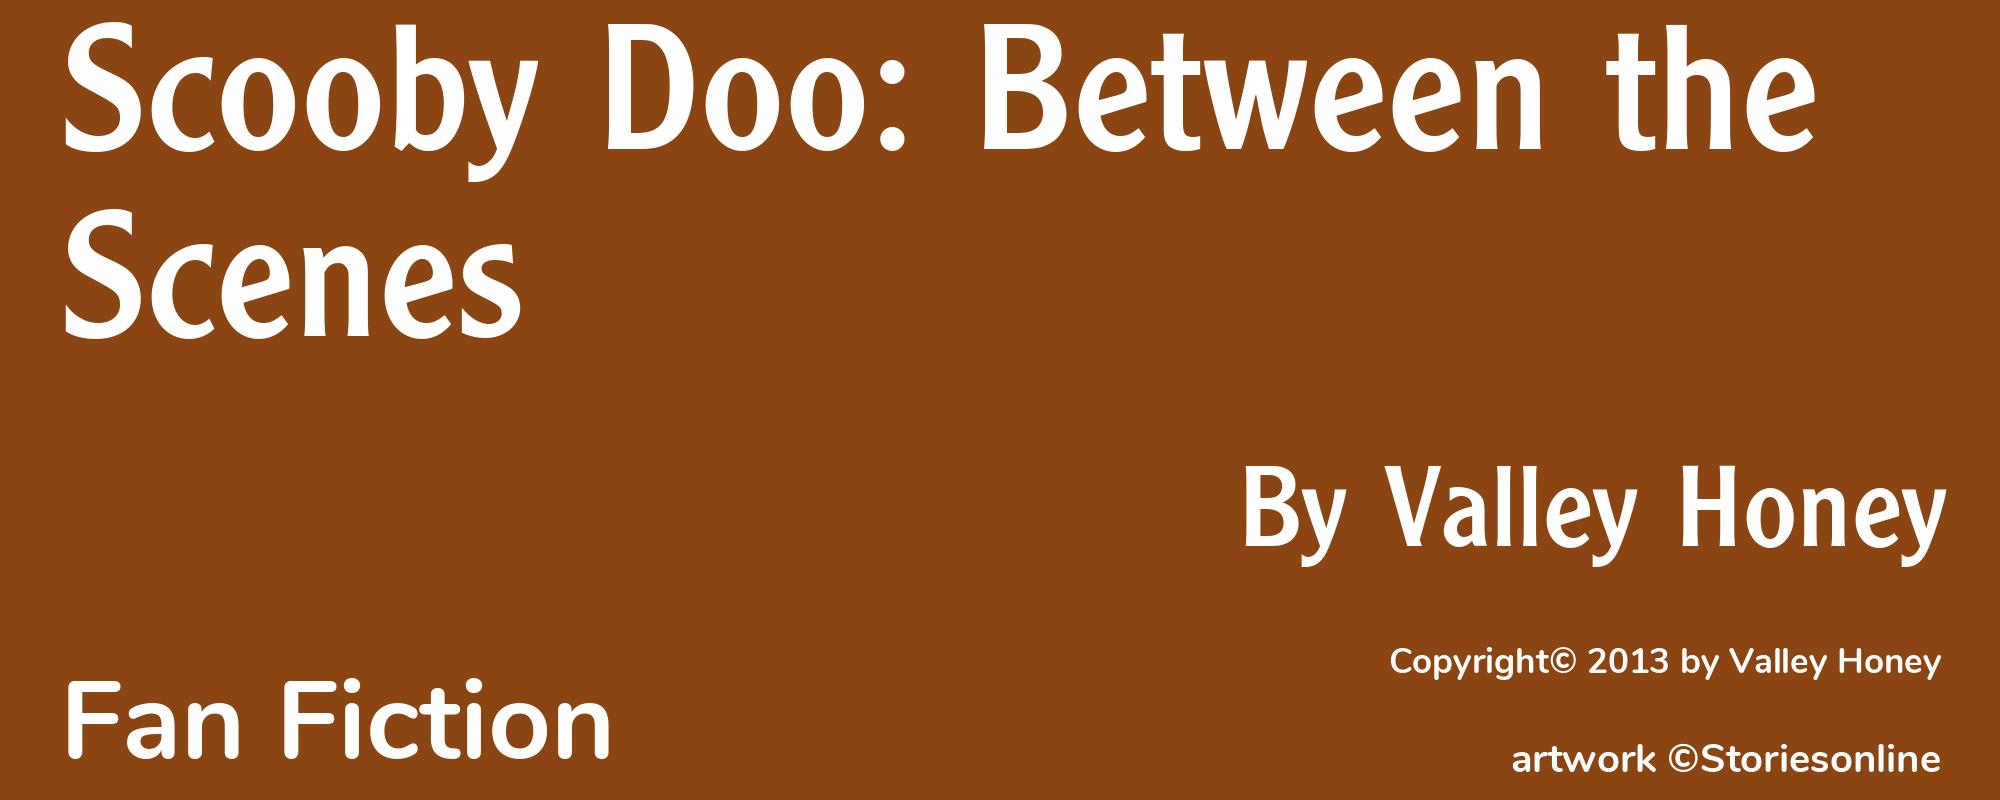 Scooby Doo: Between the Scenes - Cover